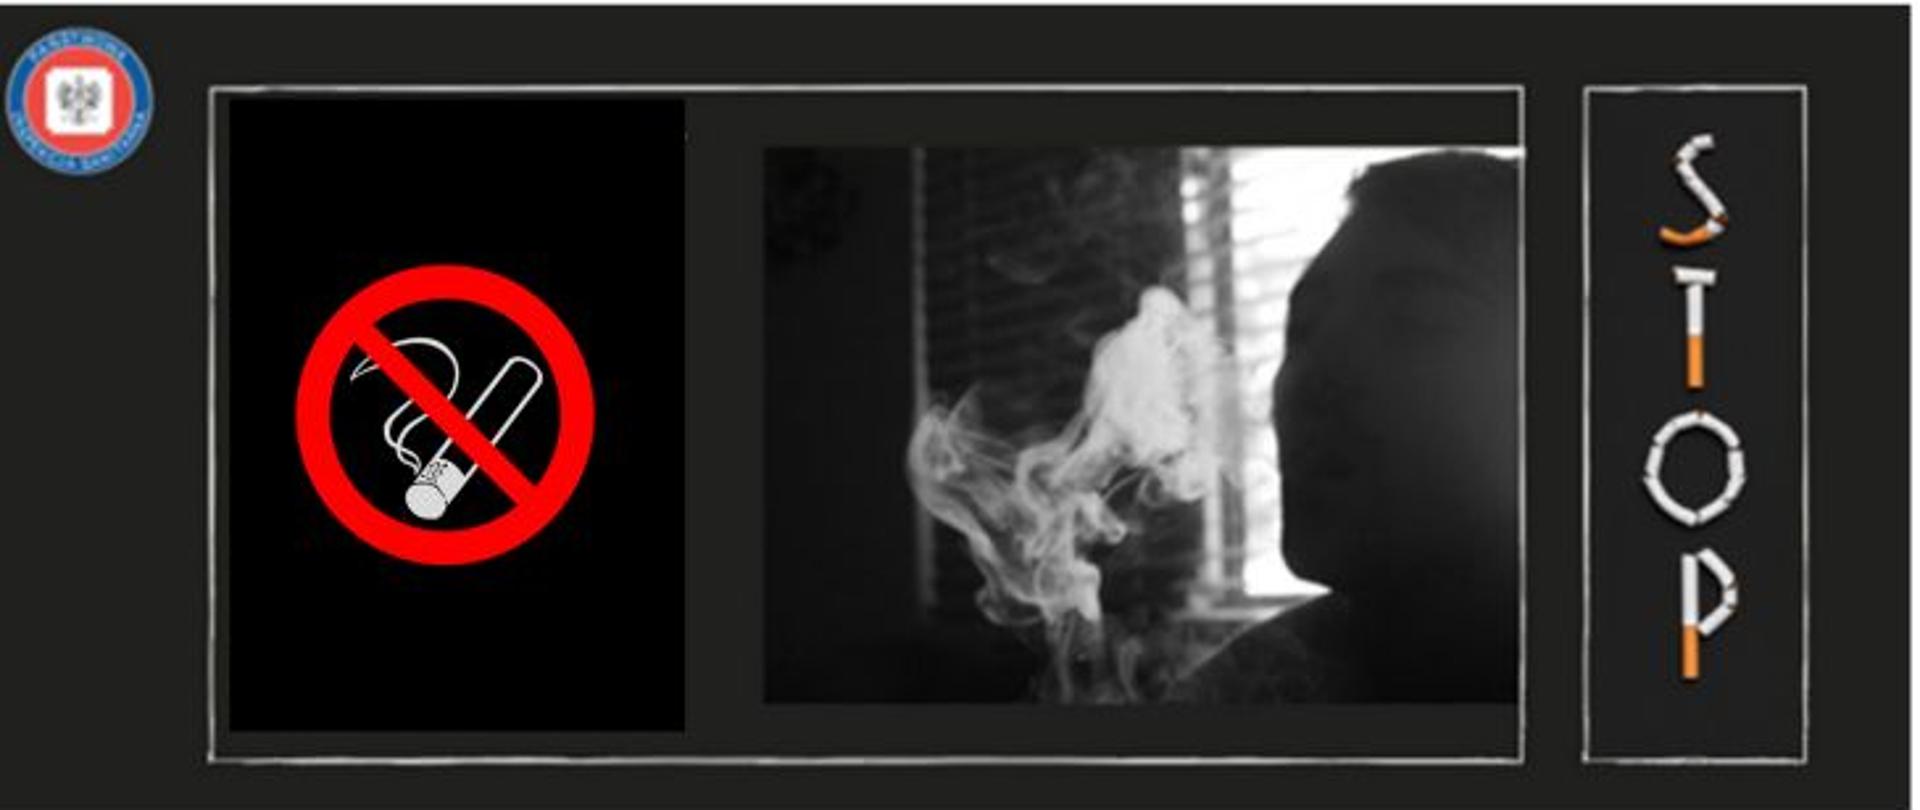 Grafika w czarnej tonacji, z prawej strony w jasnej ramce napis z kawałków papierosów STOP, na środku w jasnej ramce cień mężczyzny na tle okna w oparach dymu papierosowego i znak zakaz palenia w czerwonej ramce. W lewym górnym rogu logo Państwowej Inspekcji Sanitarnej.